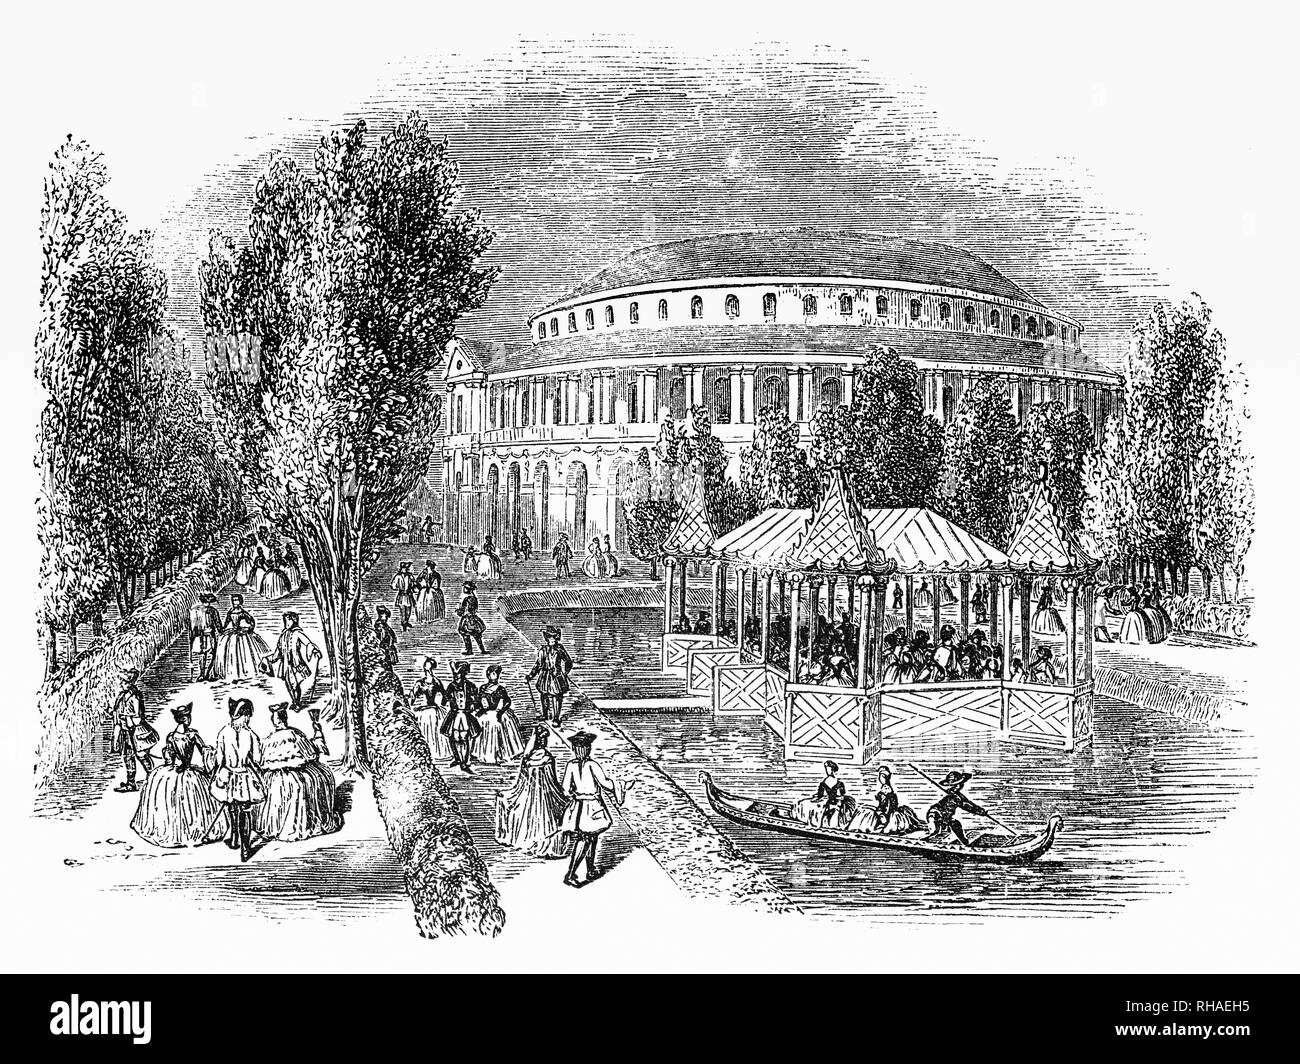 Ranelagh Gardens ont été 18e siècle les jardins d'agrément situé à Chelsea, puis juste en dehors de Londres, en Angleterre. En 1742, la maison et les jardins sont ouverts au public. La pièce centrale était une rotonde rococo, conçu par William Jones, un arpenteur de la East India Company, un lieu important pour les concerts de musique - en 1765, les neuf ans, il y a Mozart. Il y a aussi un pavillon chinois, qui a été ajouté en 1750, pièce d'eau et plusieurs promenades. Il fait maintenant partie de la raison de l'hôpital de Chelsea et le site de la Chelsea Flower Show annuel. Banque D'Images